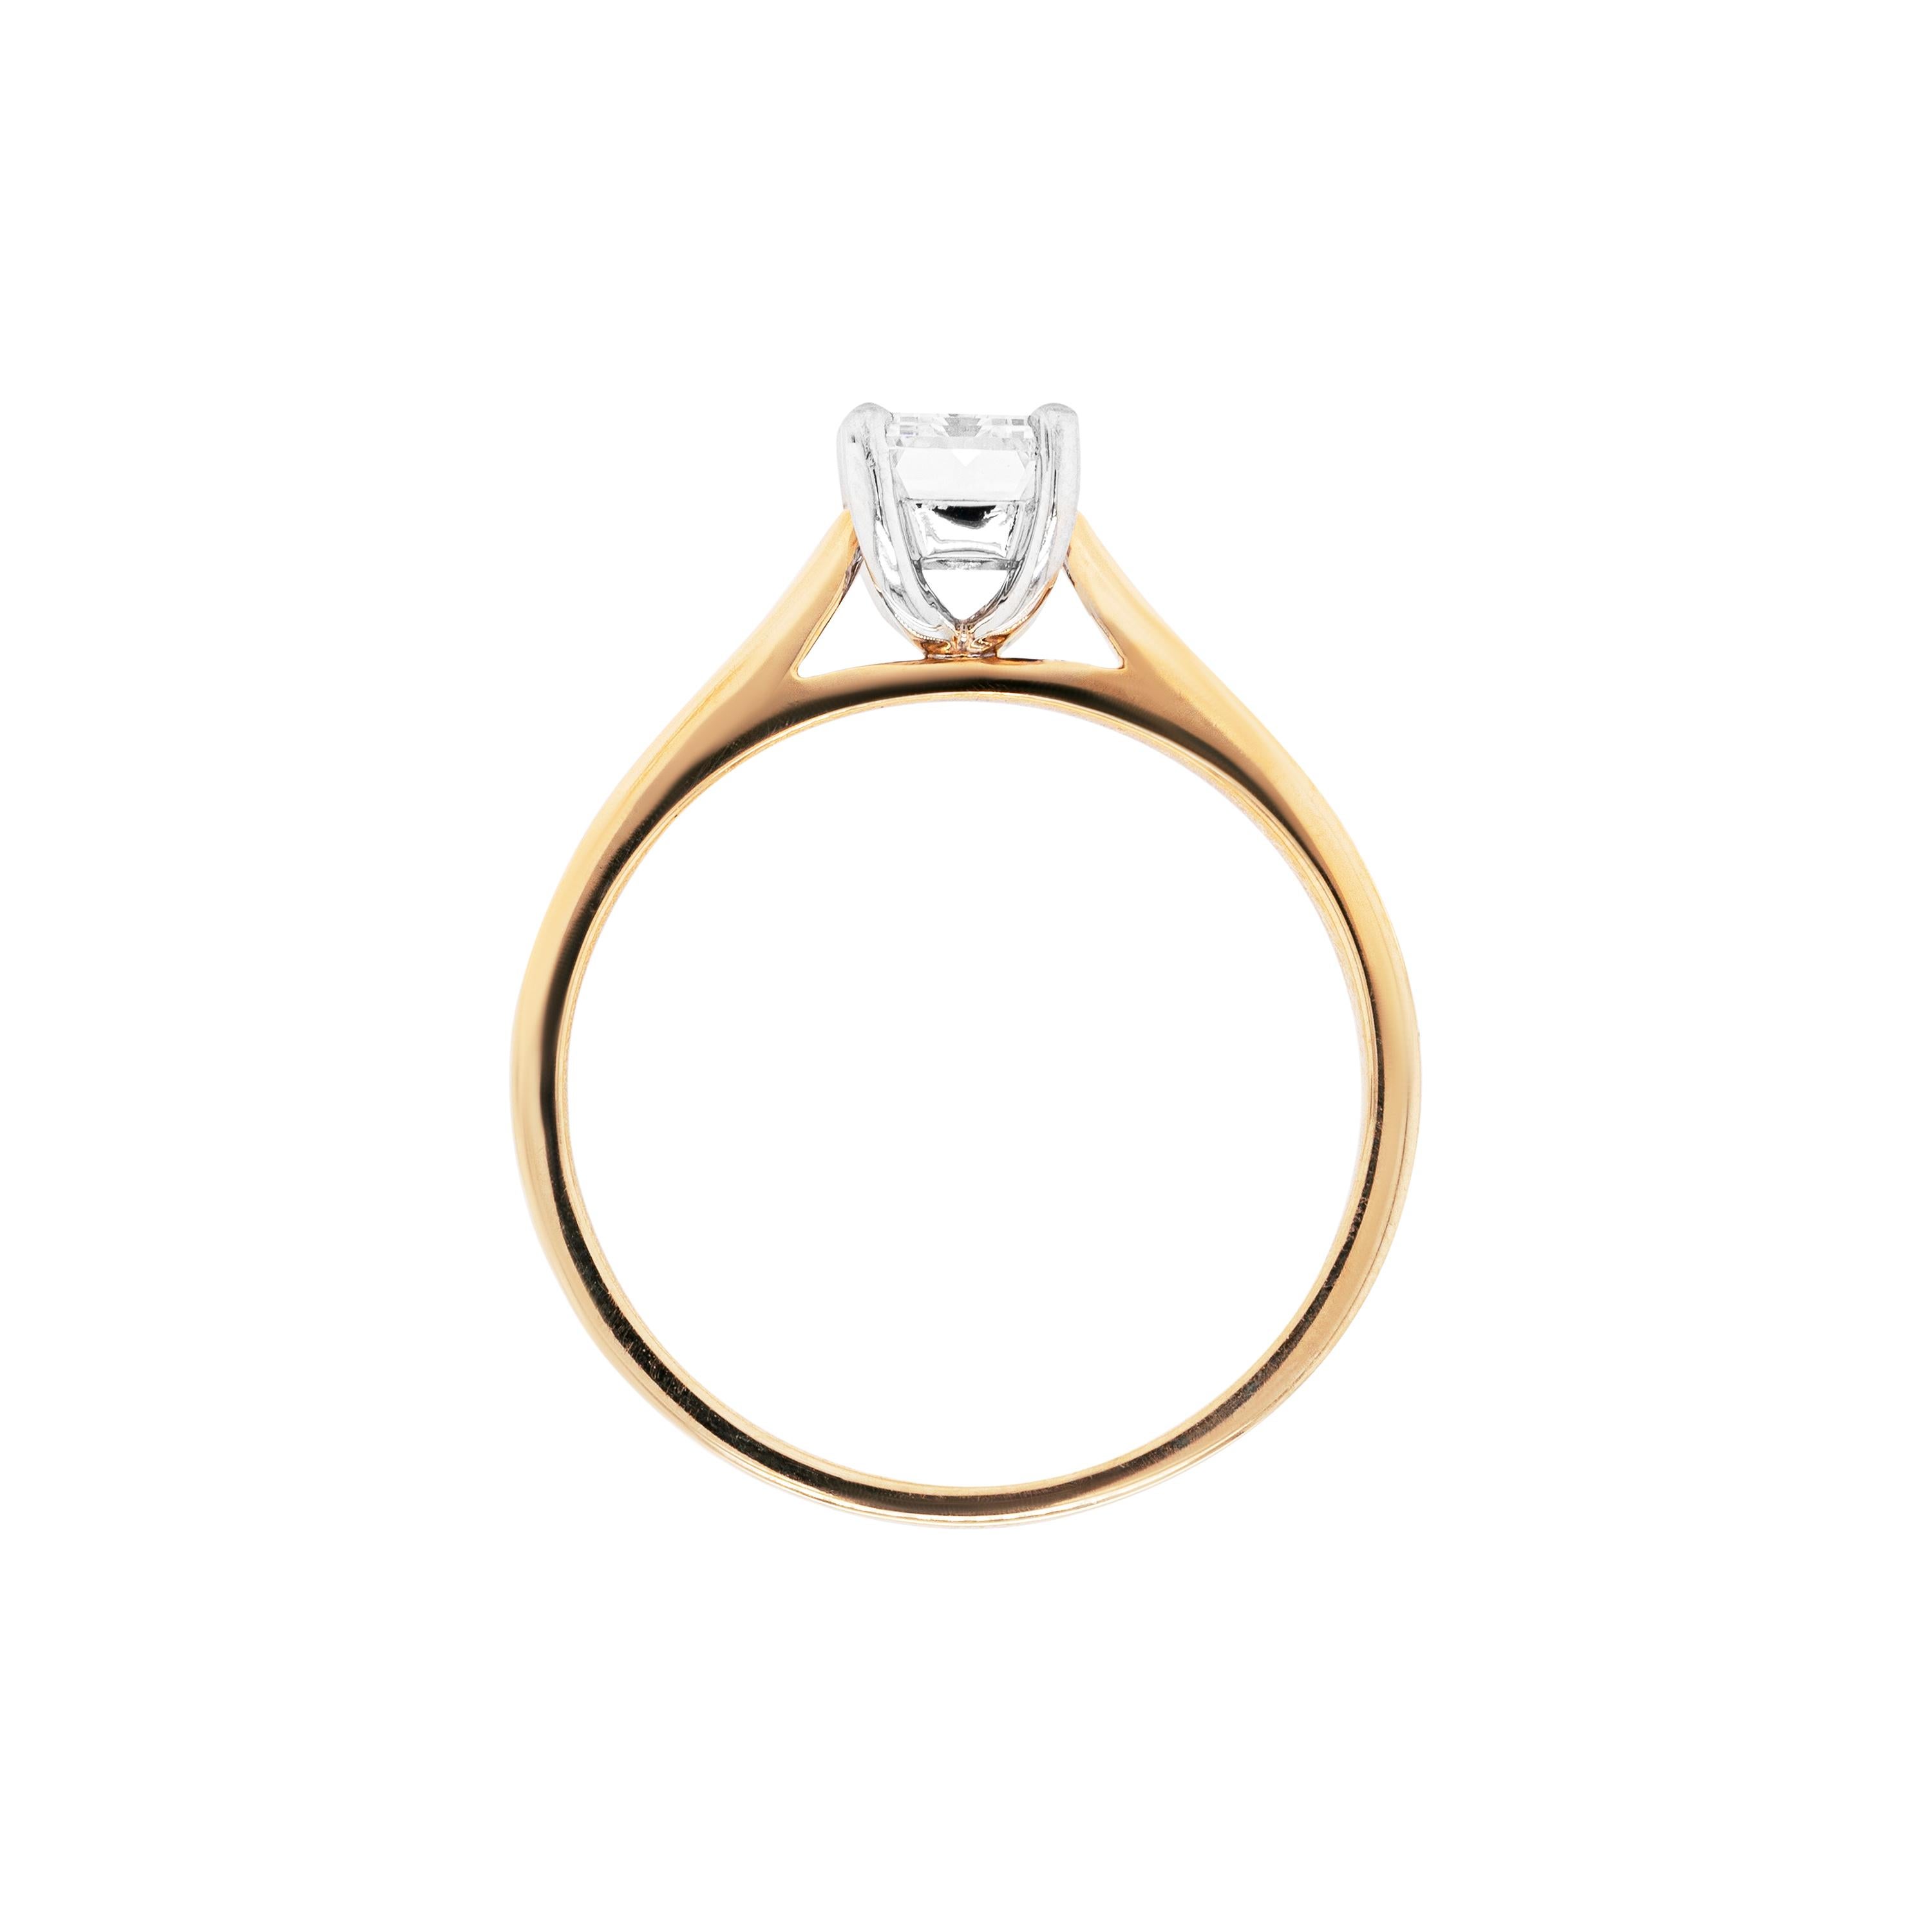 Dieser zierliche Solitär-Verlobungsring besteht aus einem zertifizierten 1,00-Karat-Diamanten im Baguetteschliff, der mit F in der Farbe und VS2 in der Reinheit eingestuft ist und in eine 18-Karat-Weißgoldfassung mit vier Krallen und offener